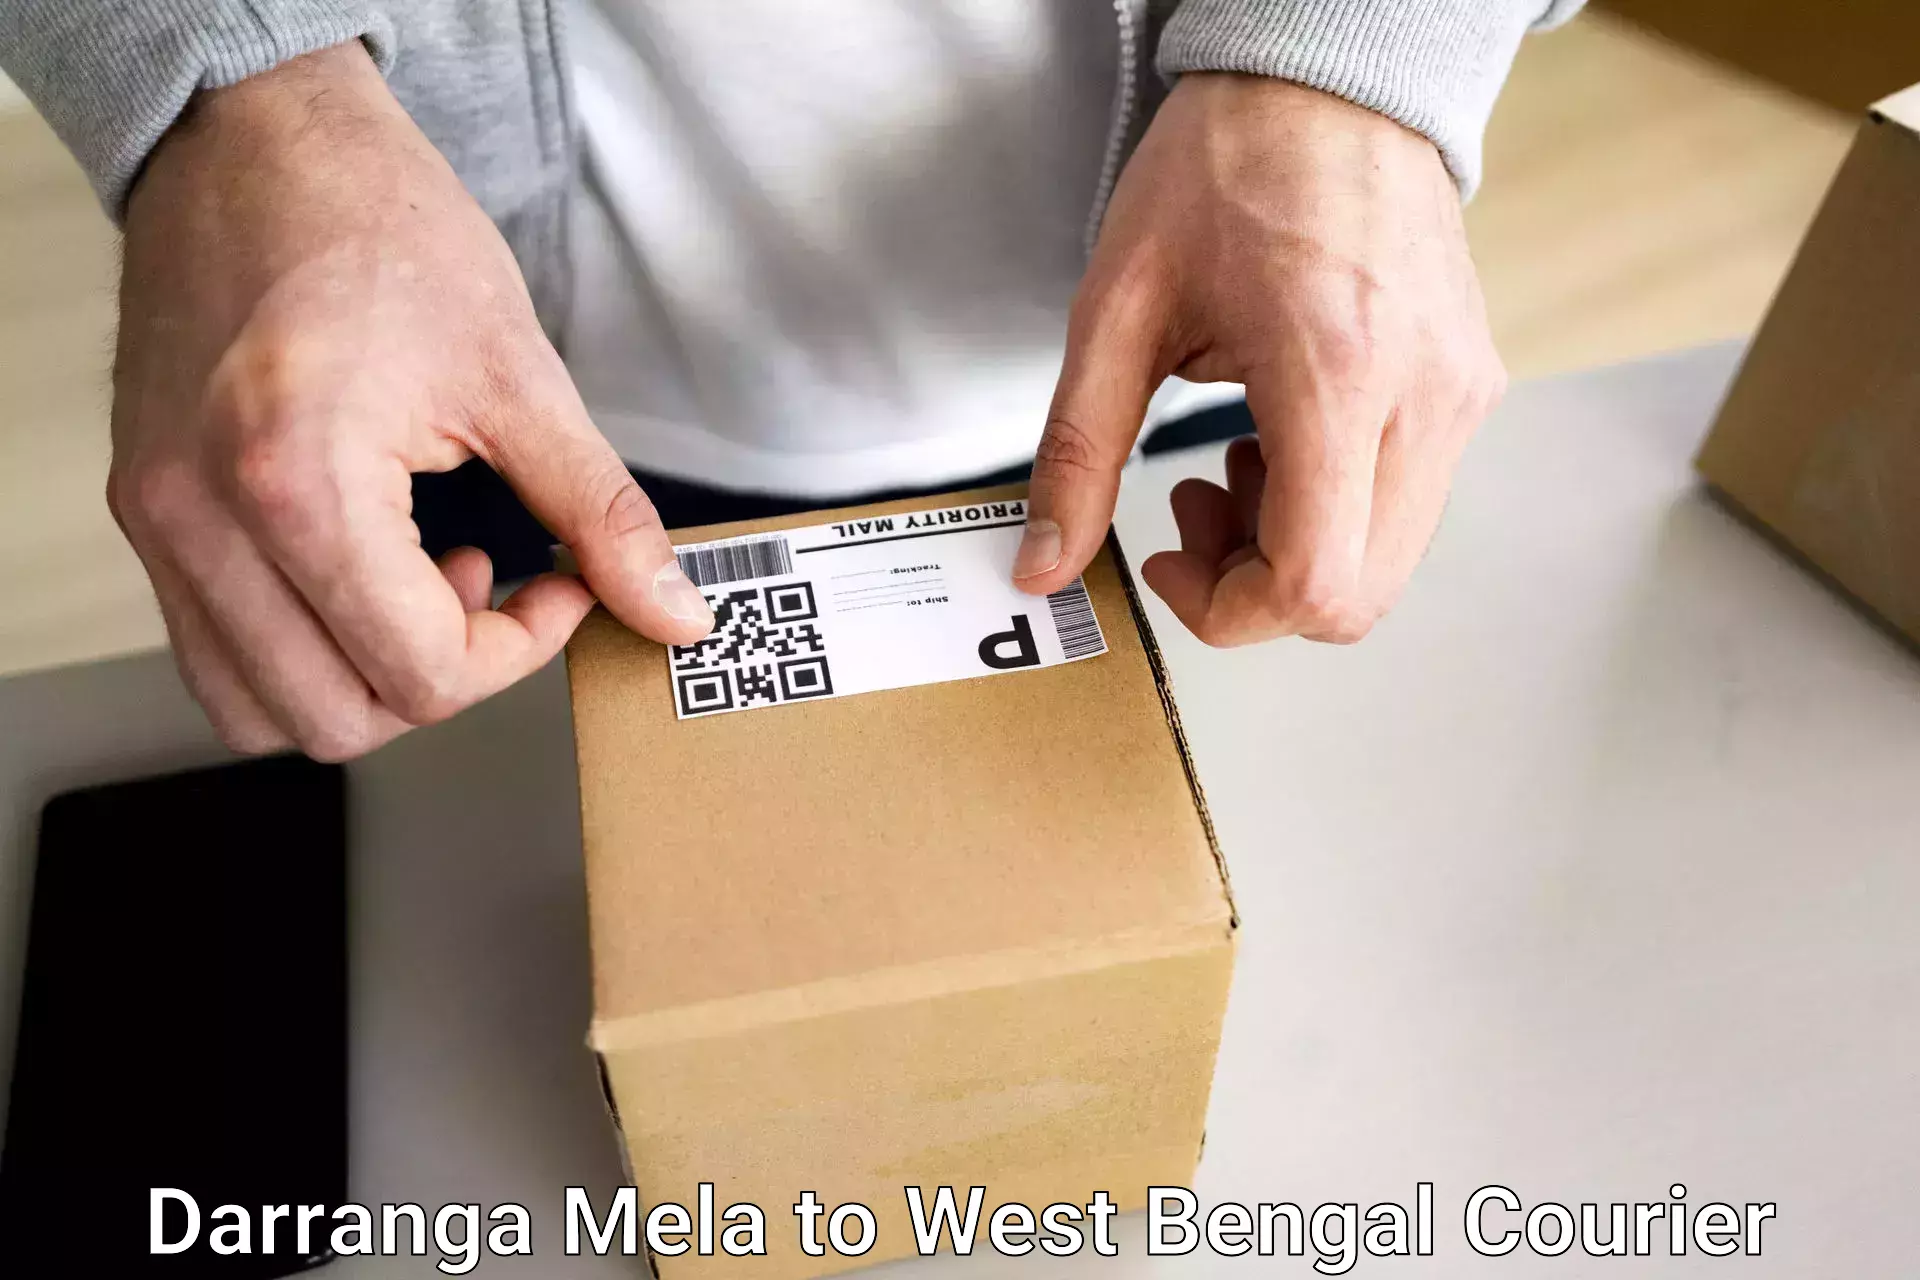 Customized luggage delivery Darranga Mela to Bongaon